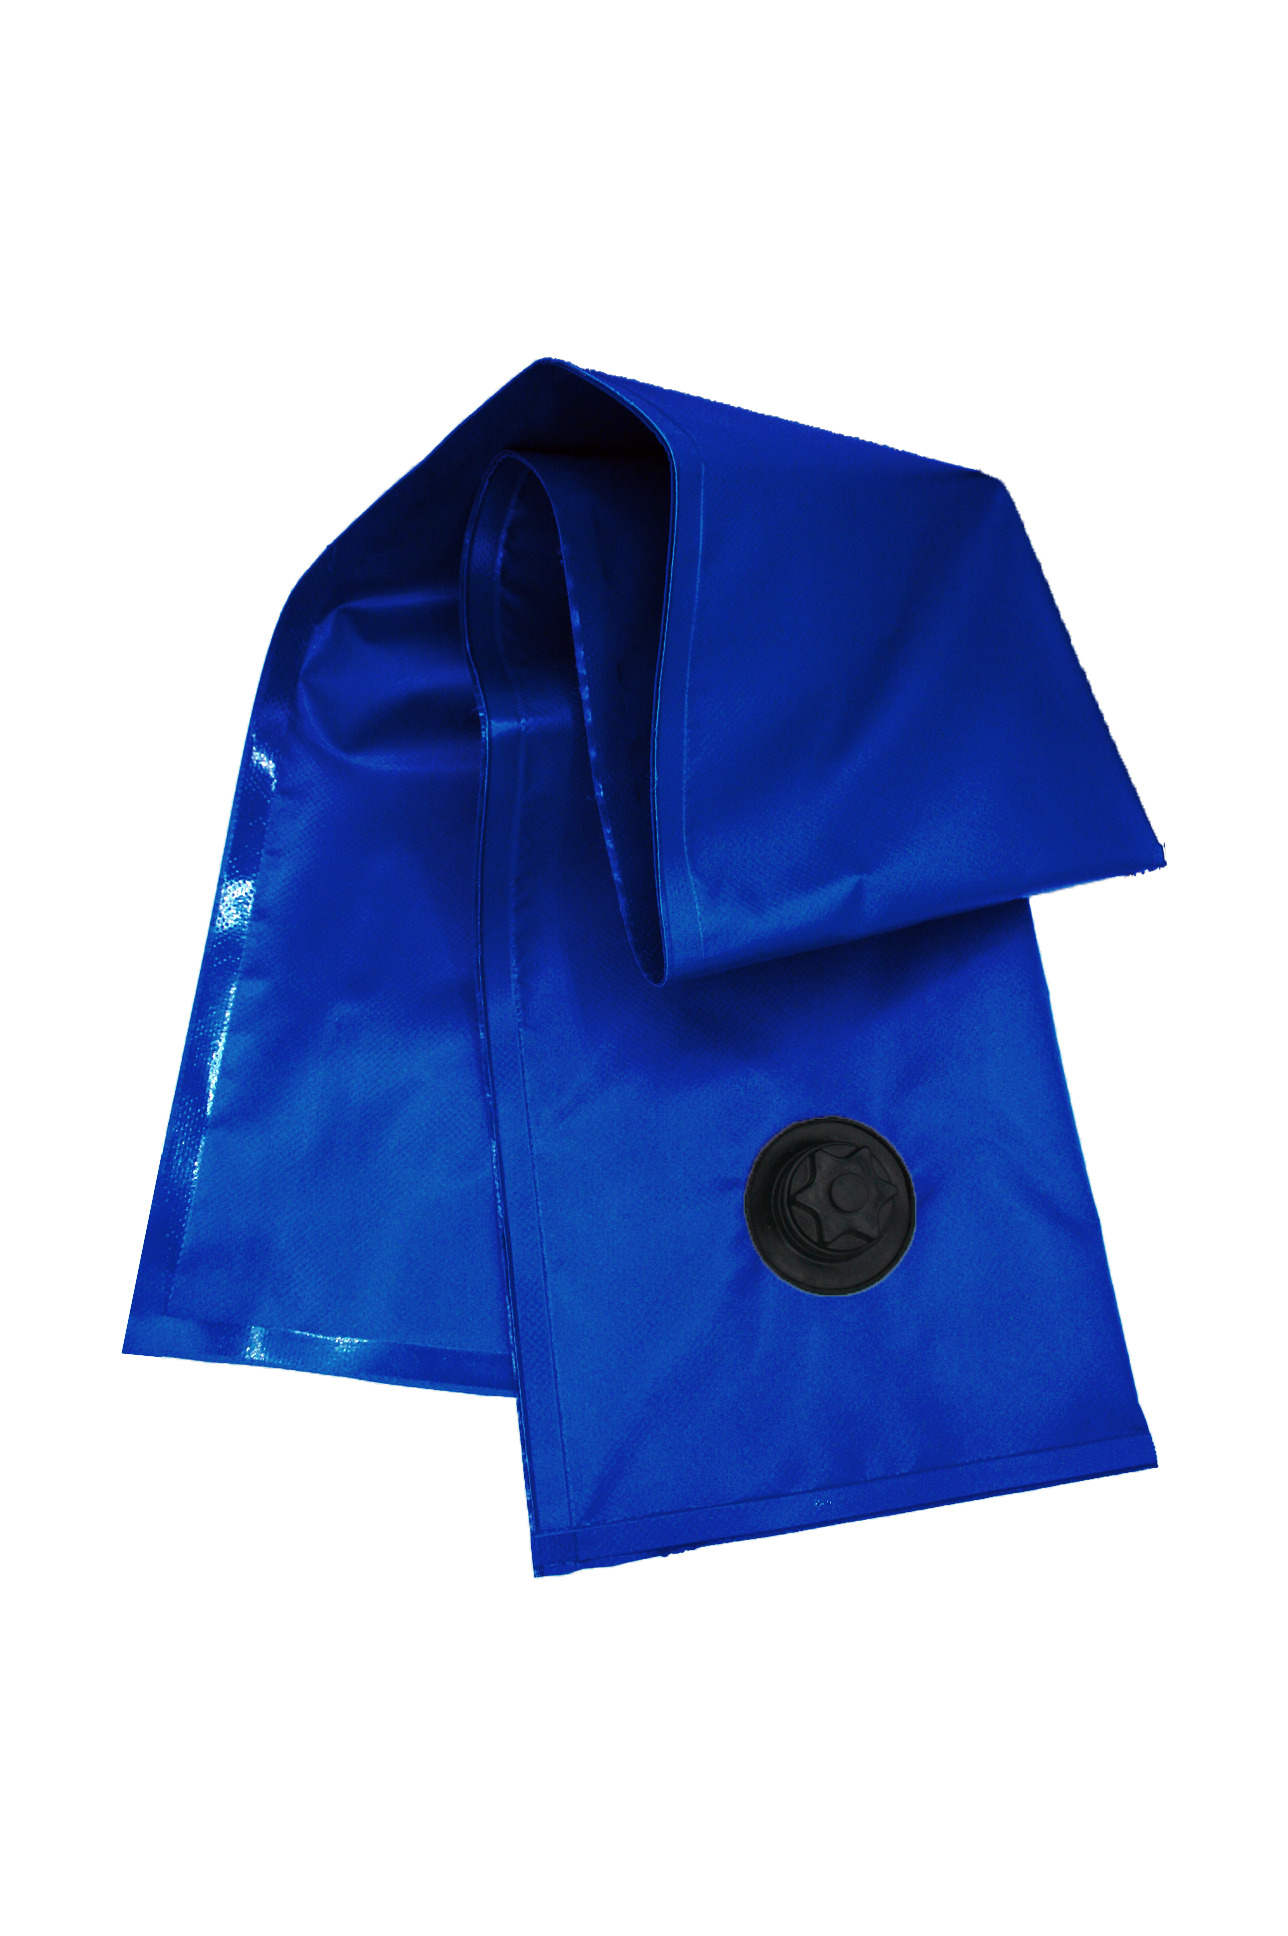 Accessori per teli - accessori per teloni - accessori per piscina - accessori tende da sole - salsicciotti copertura piscina blu joe albanese